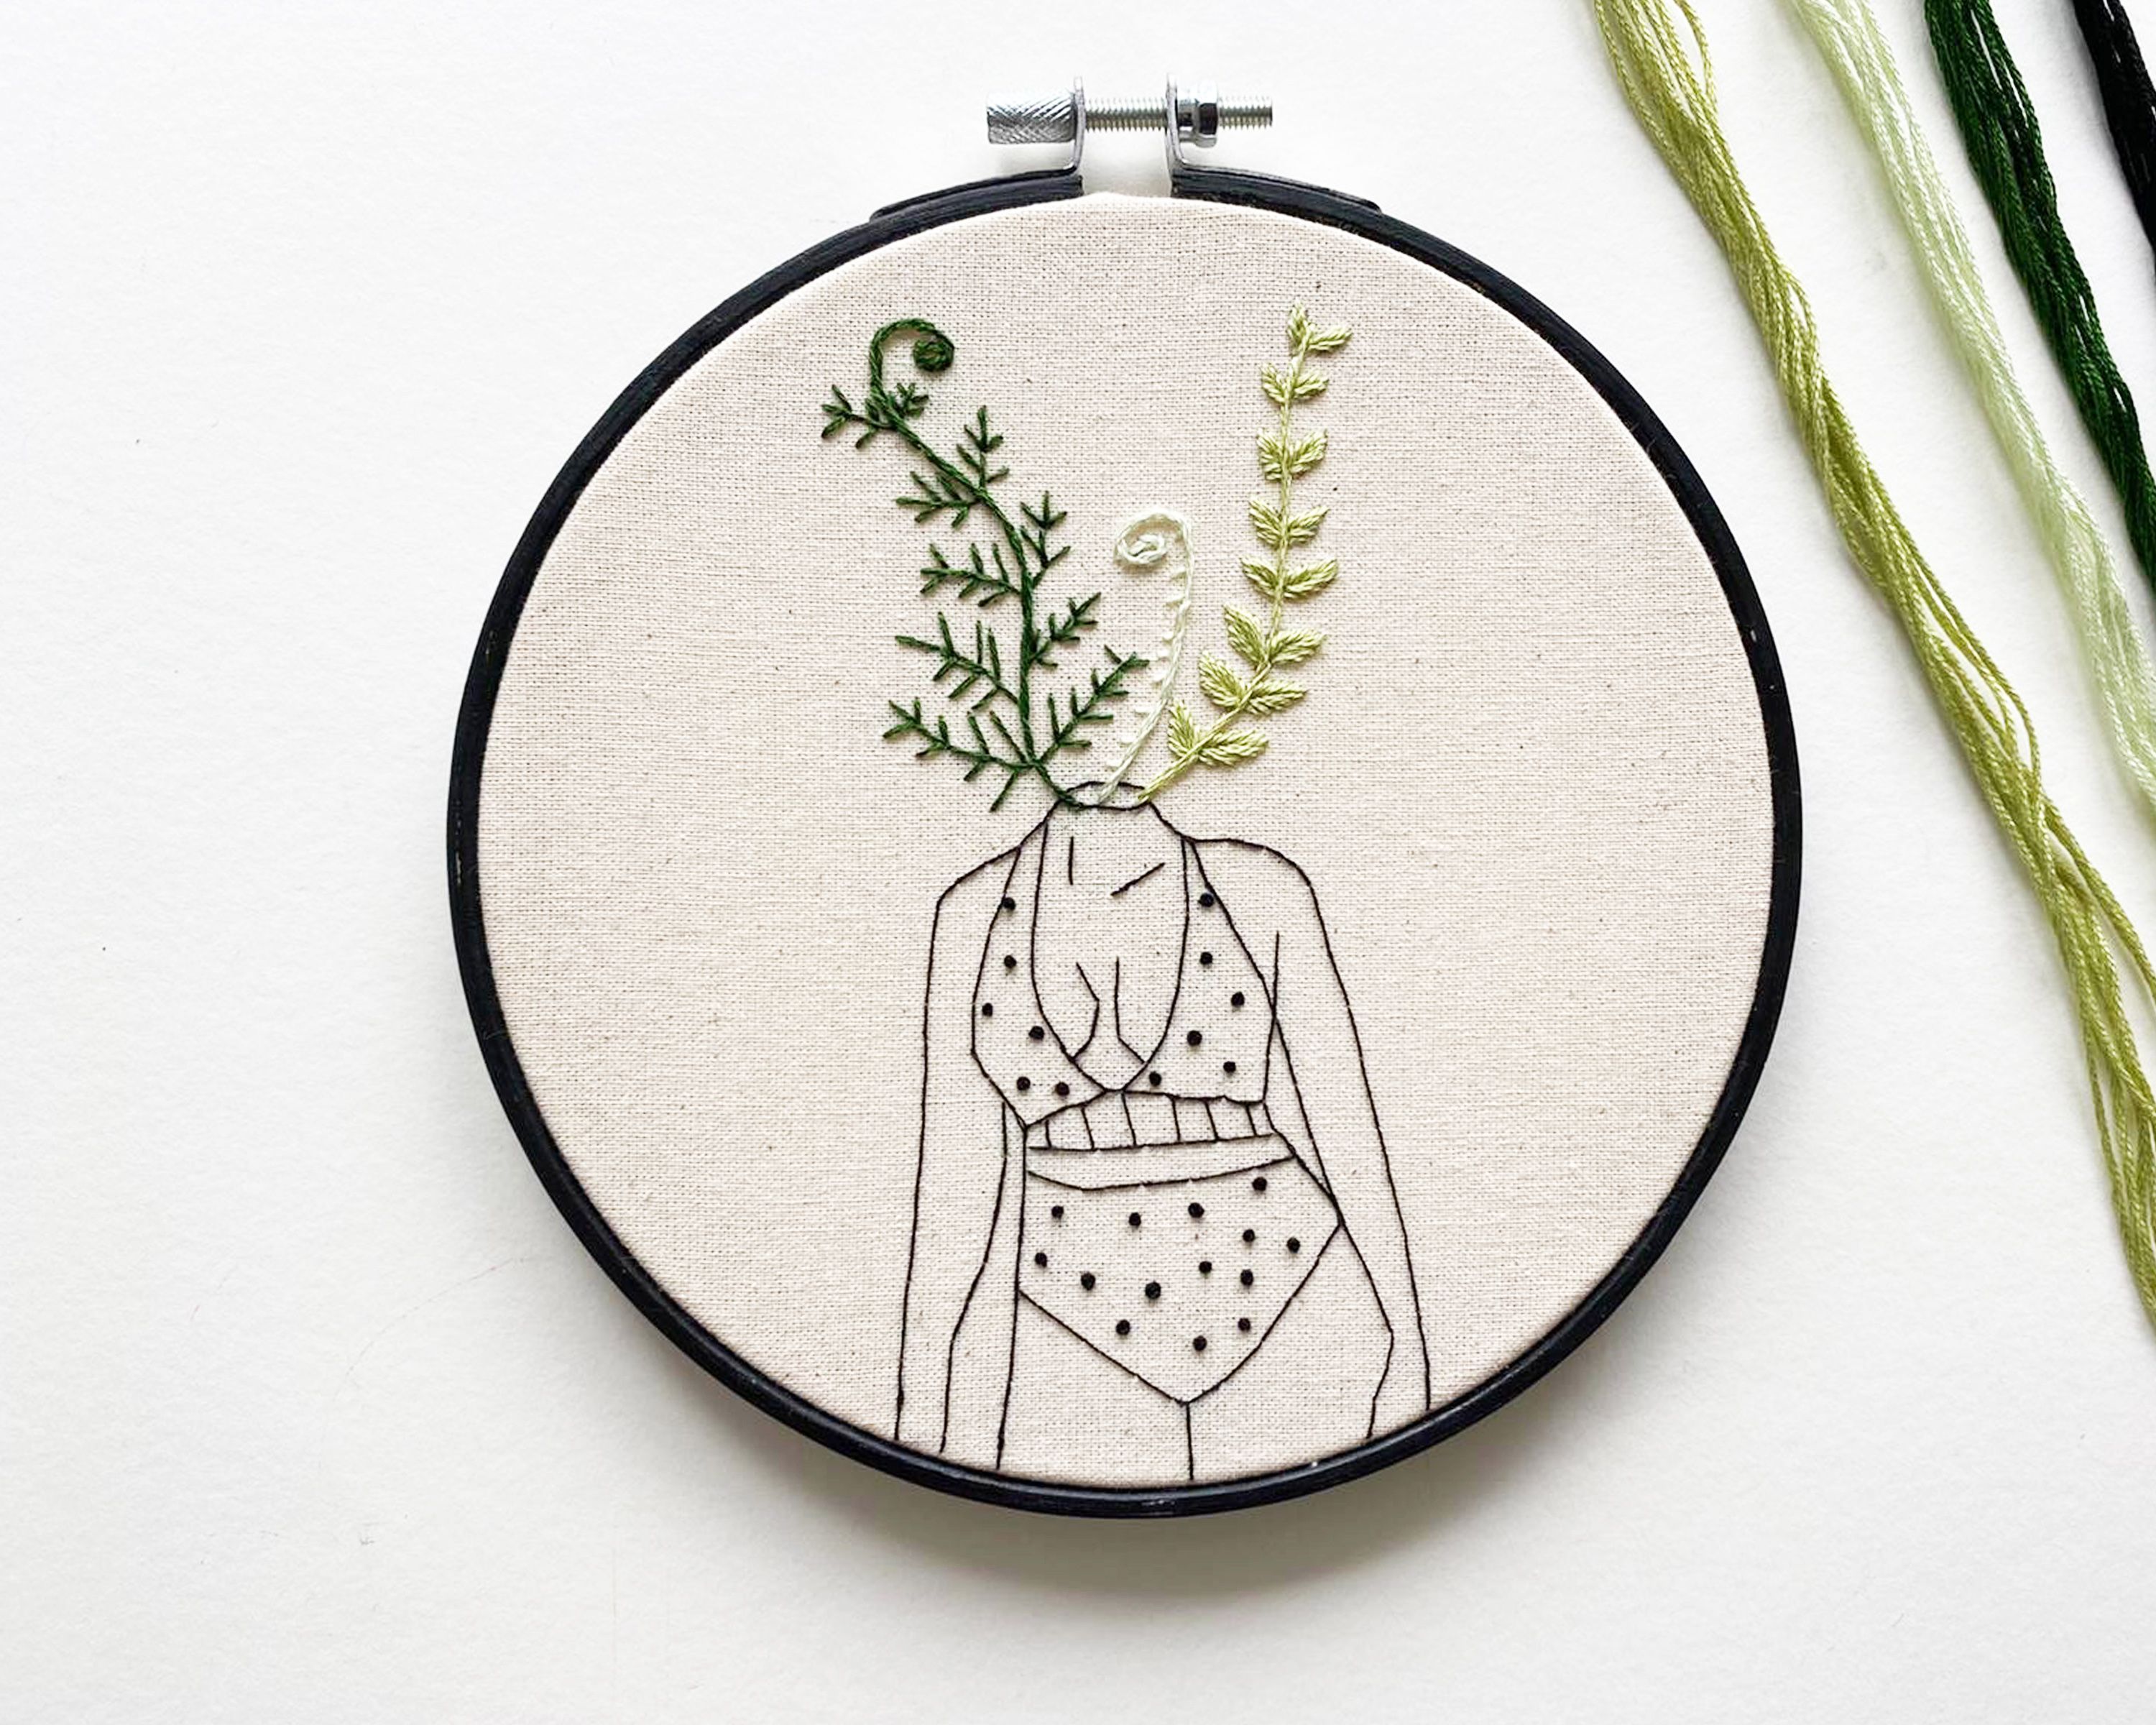 'Fern' Embroidery Hoop Art Kit